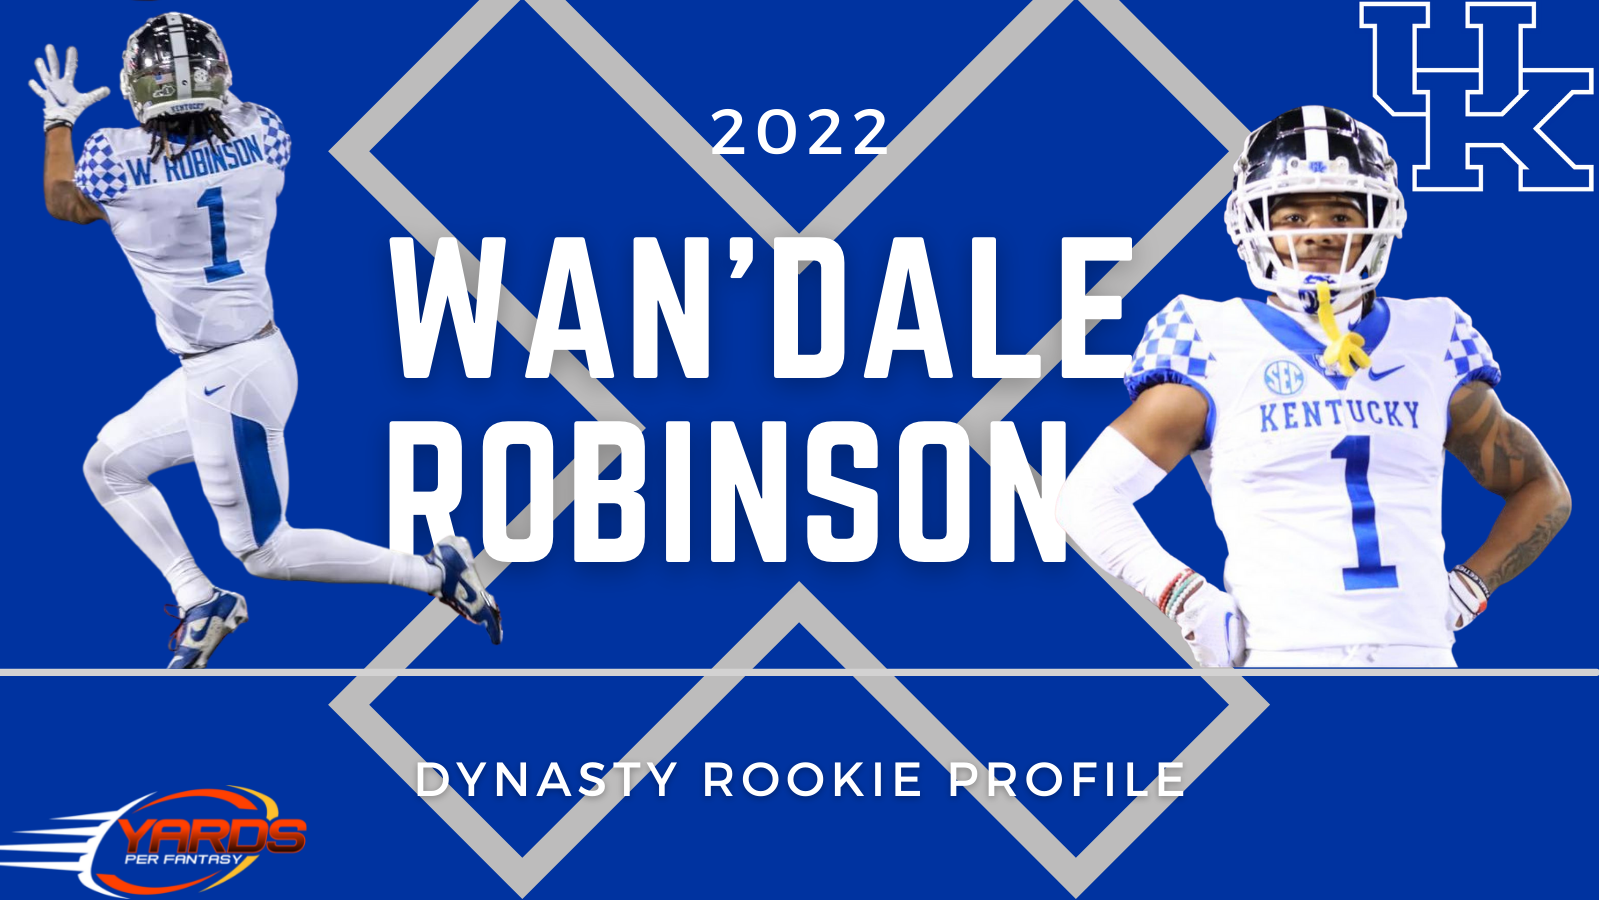 Wan’Dale Robinson 2022 Dynasty Rookie Profile Yards Per Fantasy